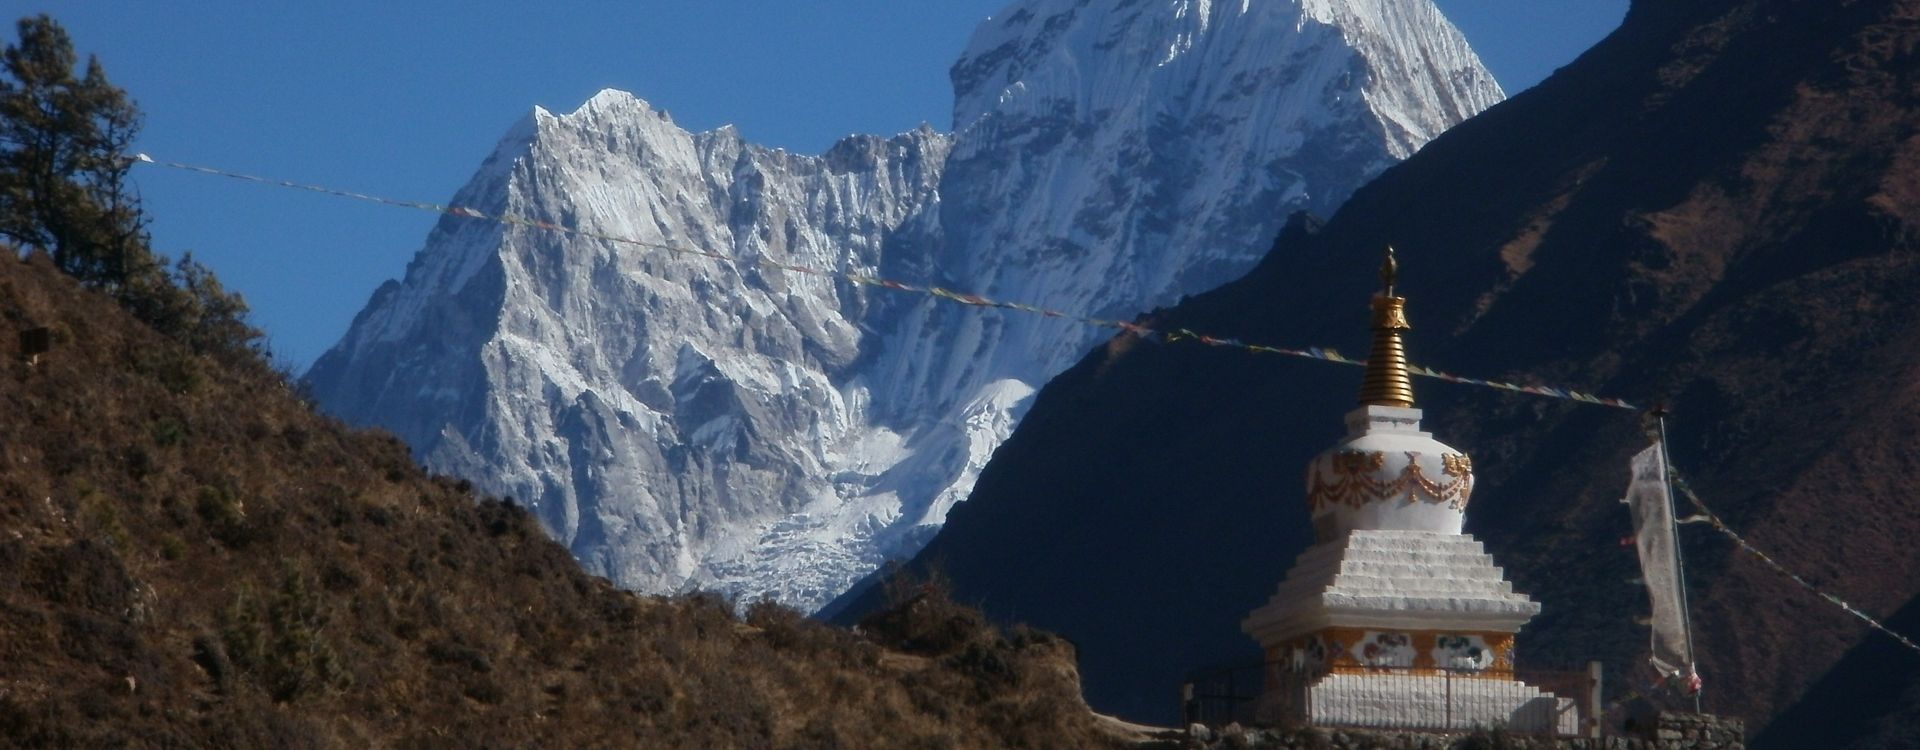 Sherpa Himalaya-Everest Base Camp Trek (17).JPG